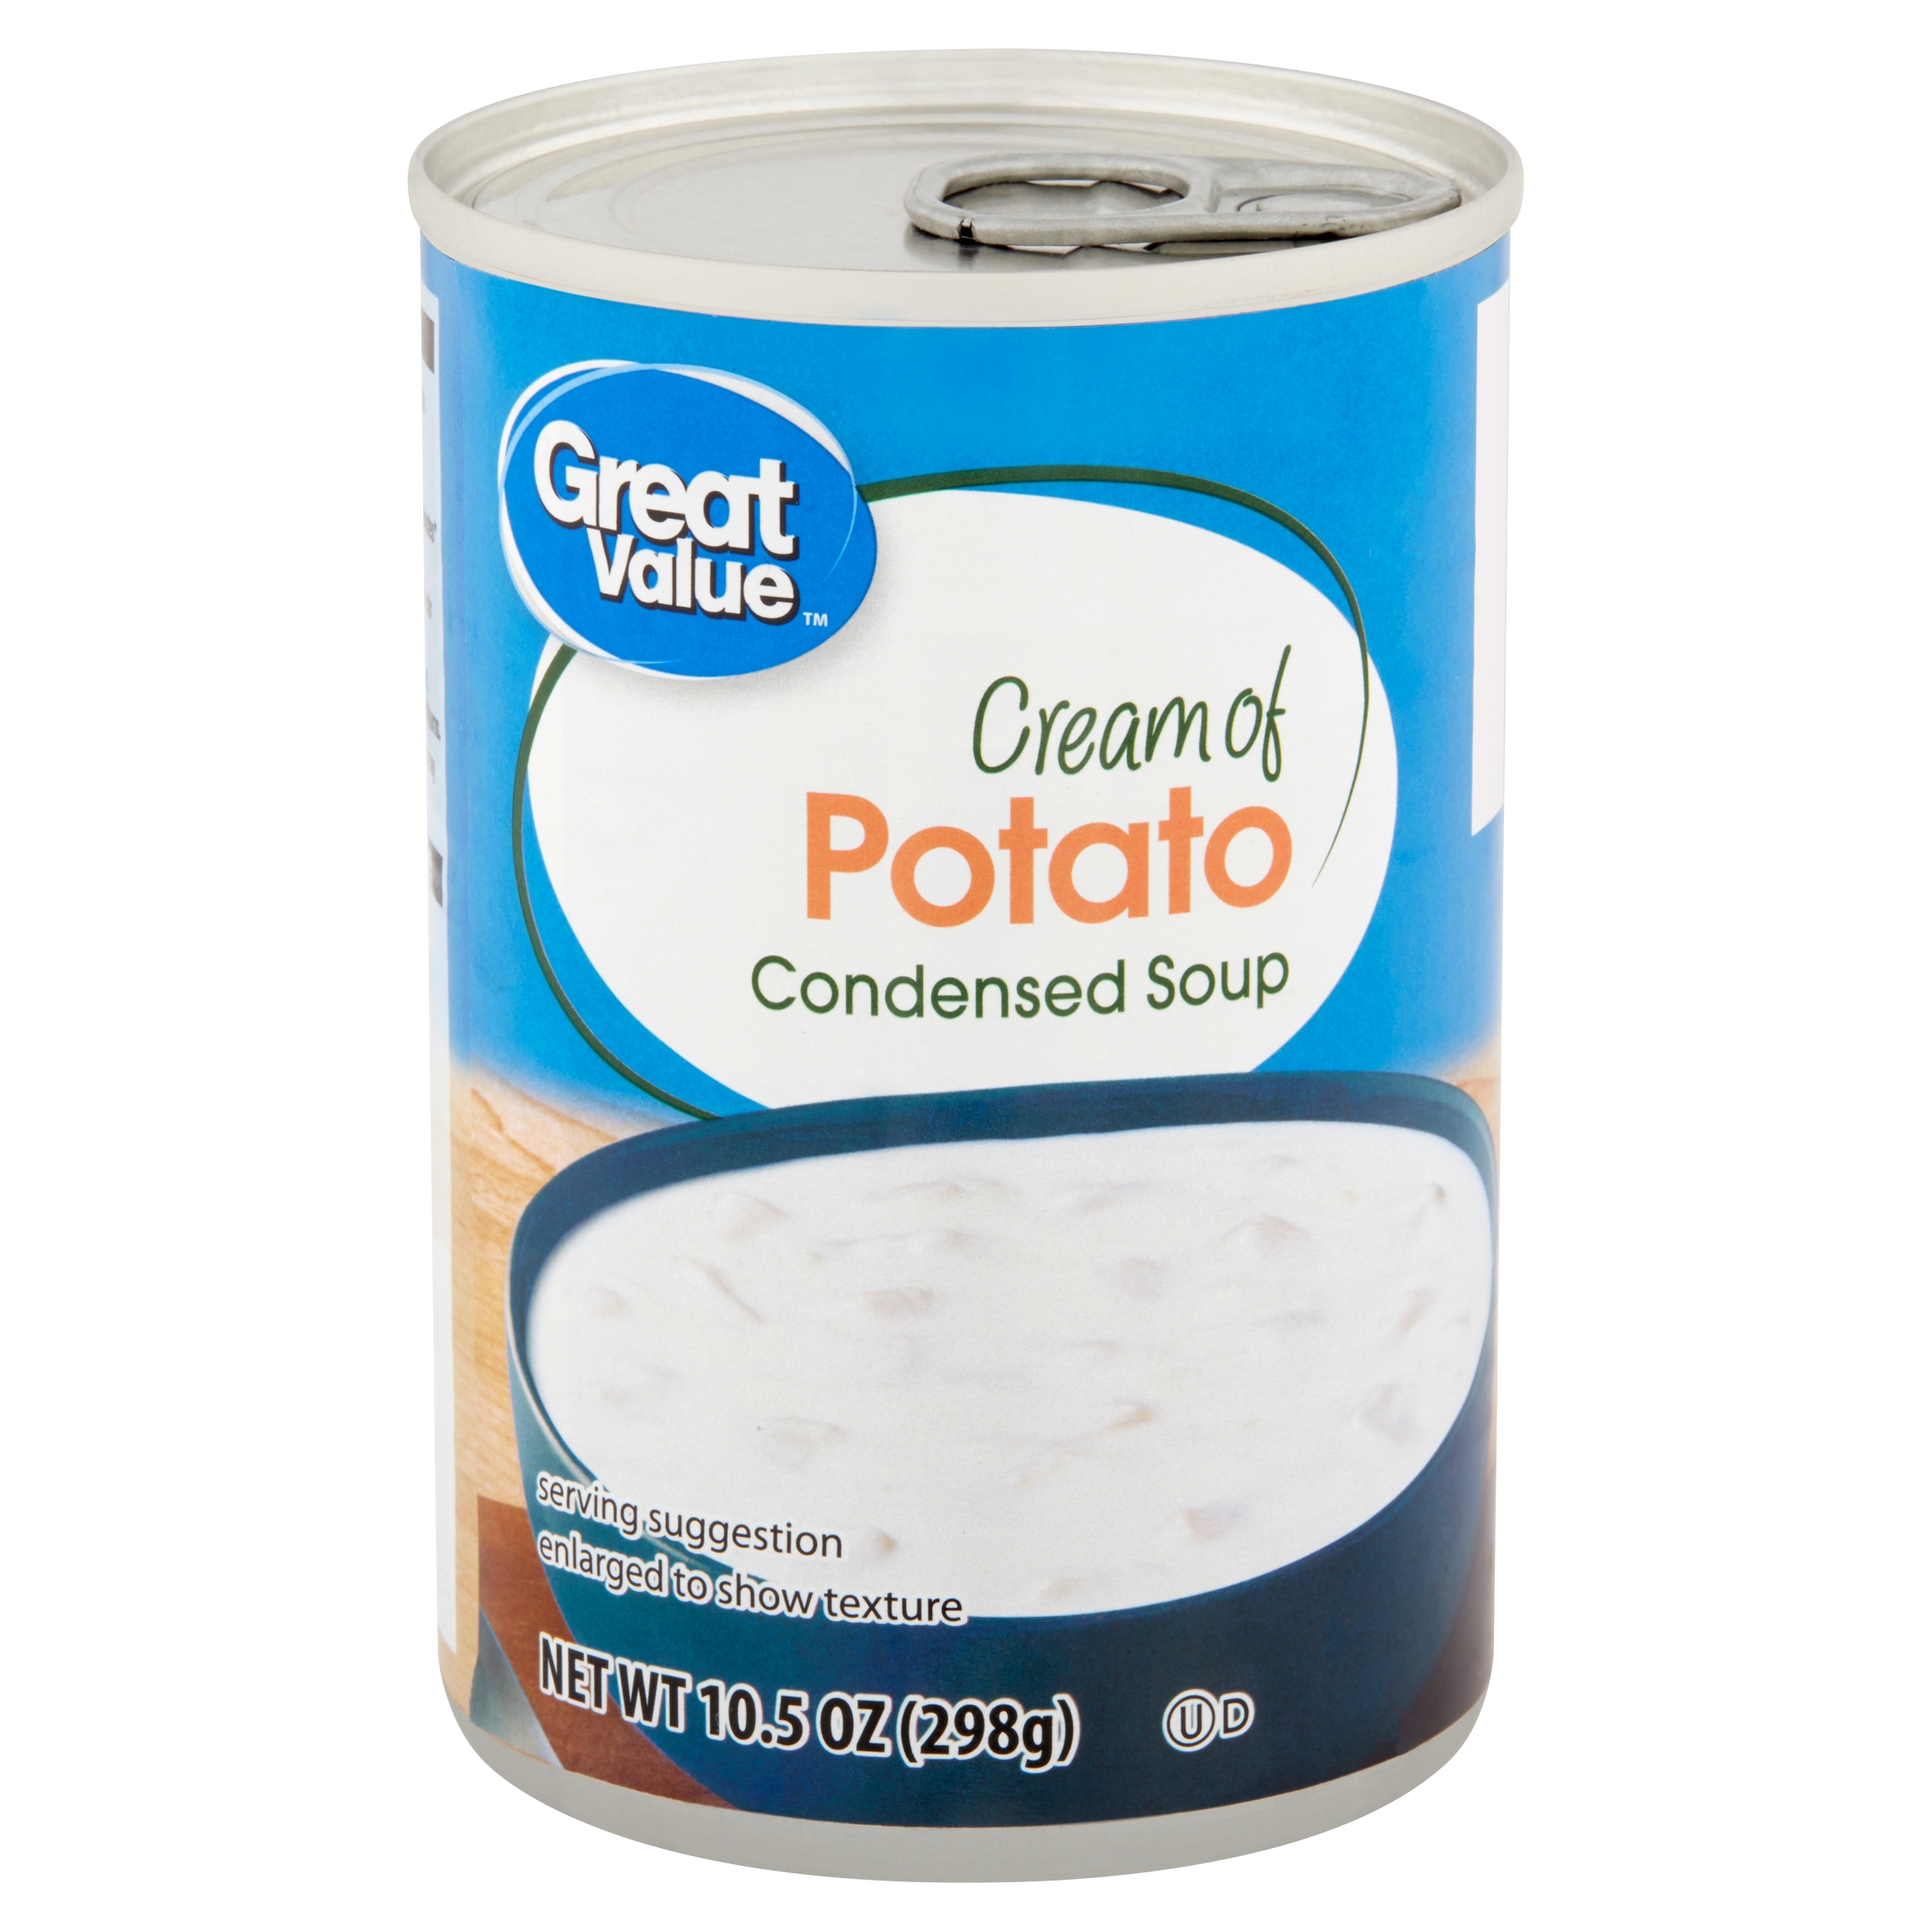 Great Value Cream of Potato Condensed Soup, 10.5 Oz Image